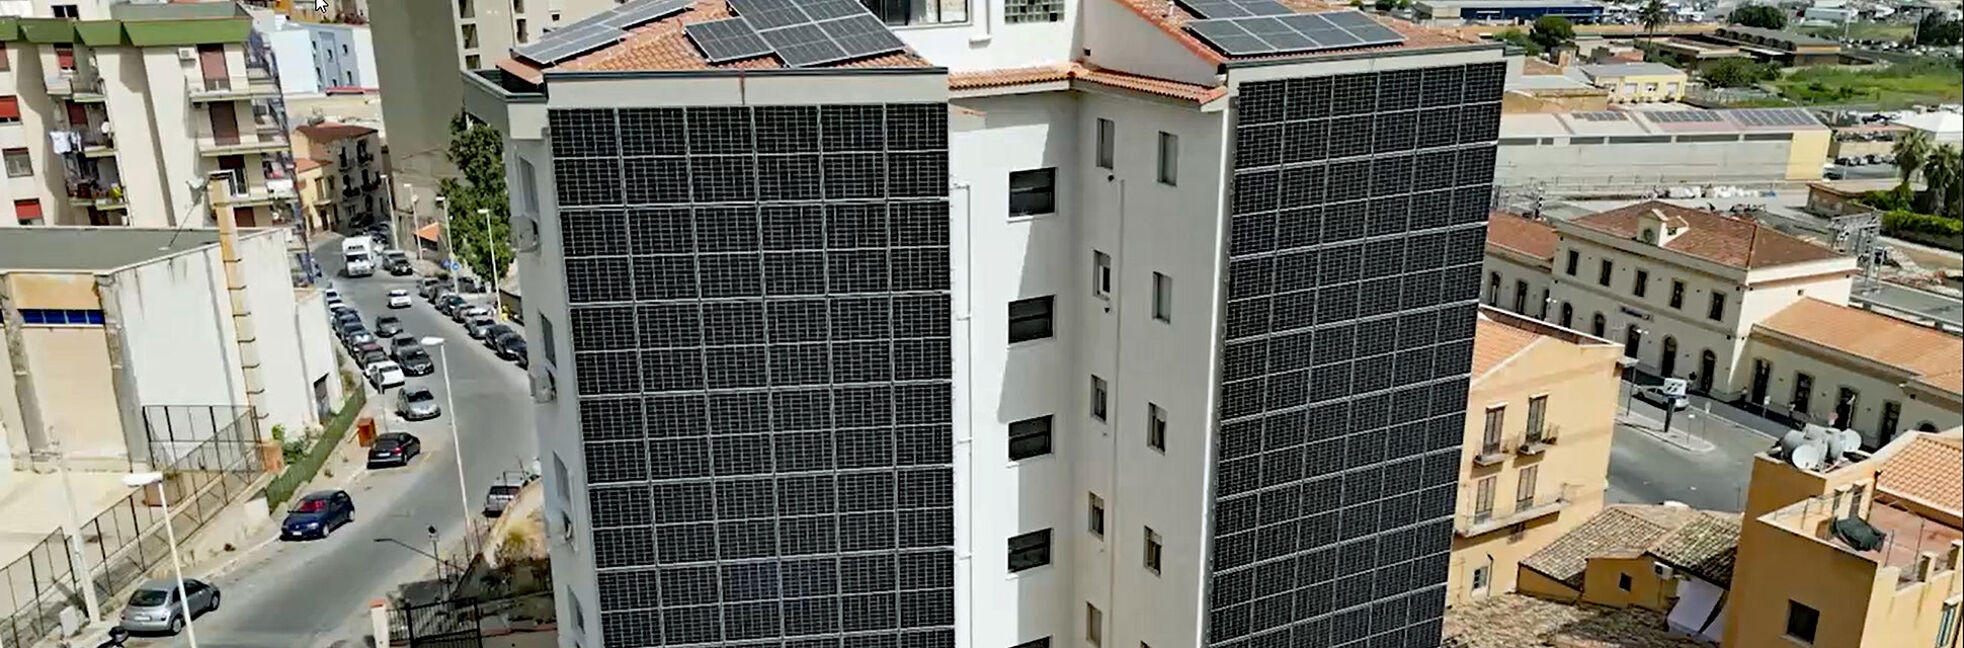 Sicherer Halt für Photovoltaik-Fassade